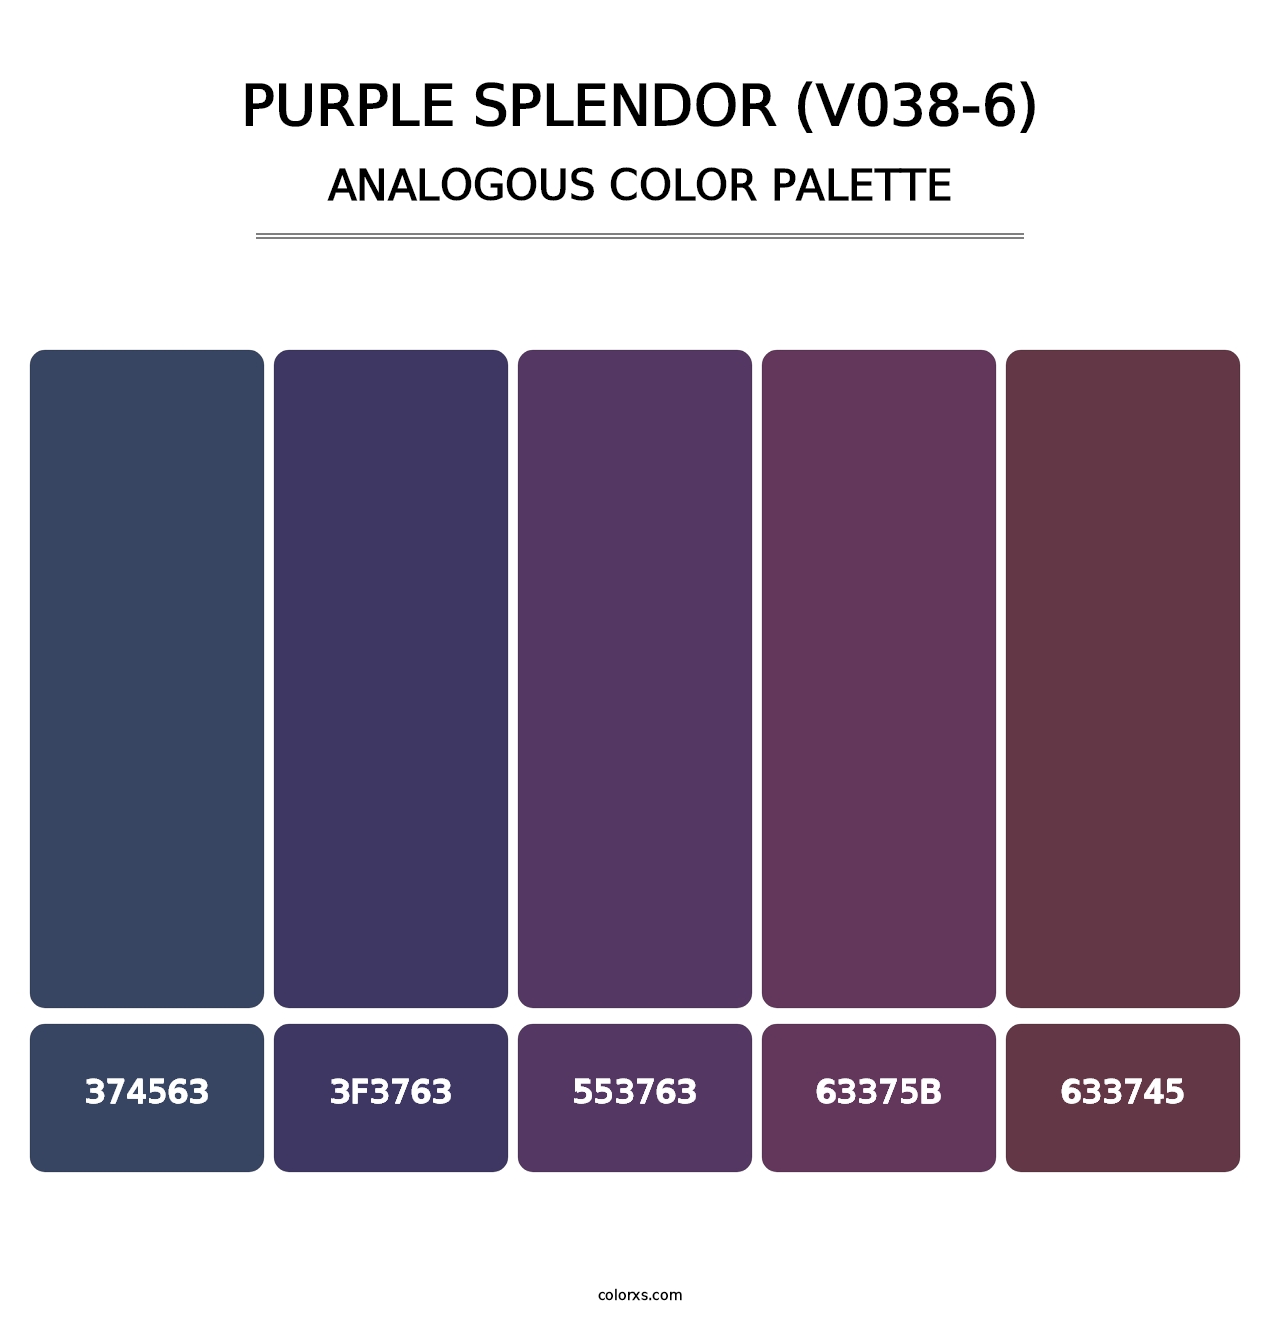 Purple Splendor (V038-6) - Analogous Color Palette